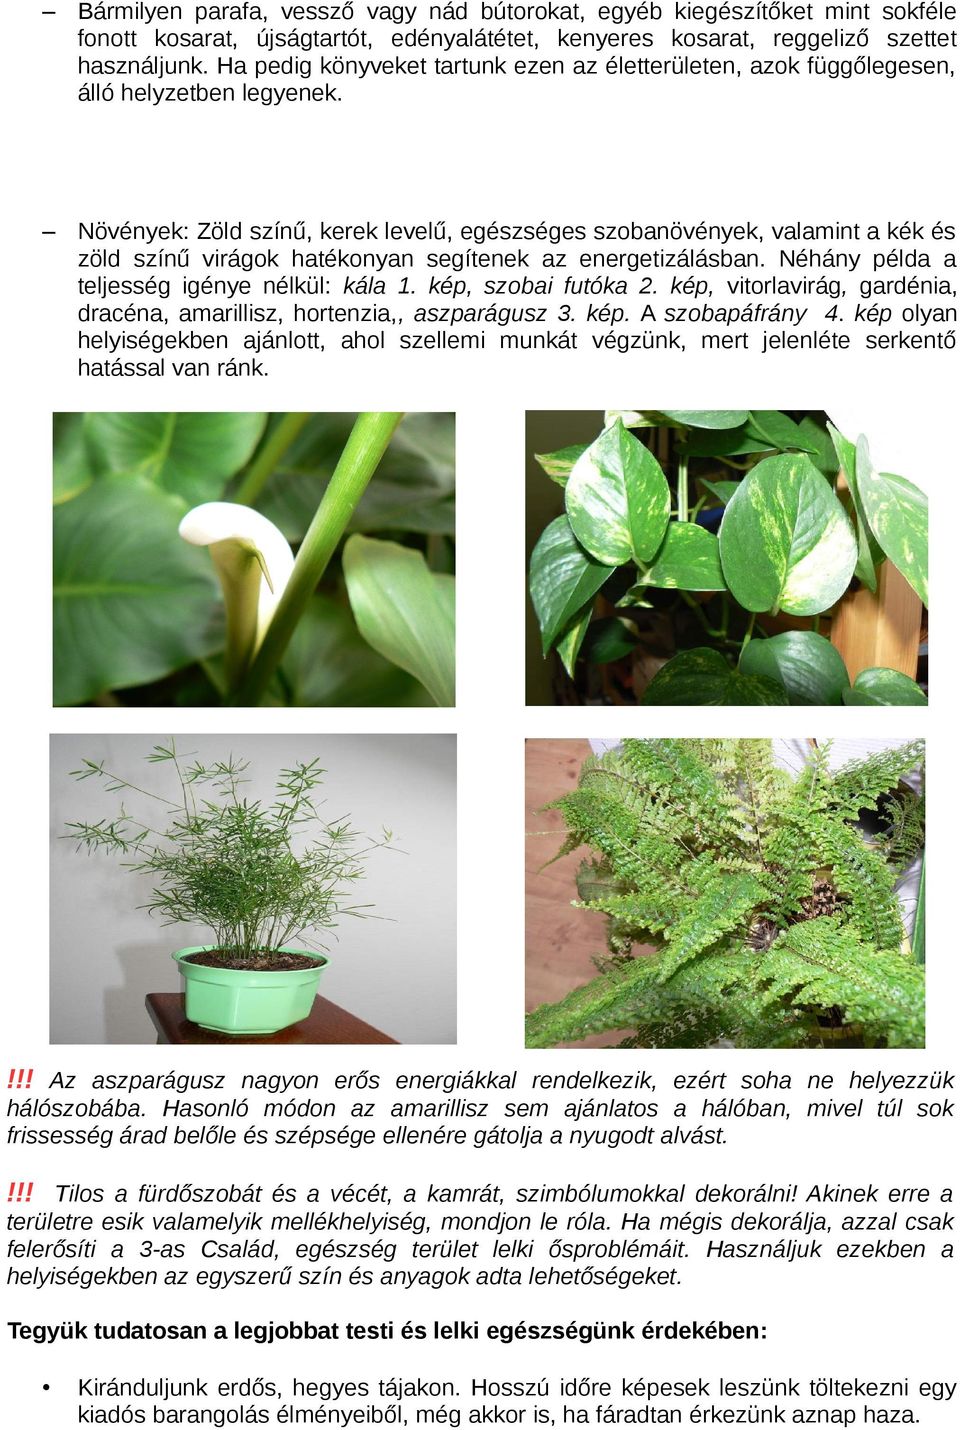 Növények: Zöld színű, kerek levelű, egészséges szobanövények, valamint a kék és zöld színű virágok hatékonyan segítenek az energetizálásban. Néhány példa a teljesség igénye nélkül: kála 1.